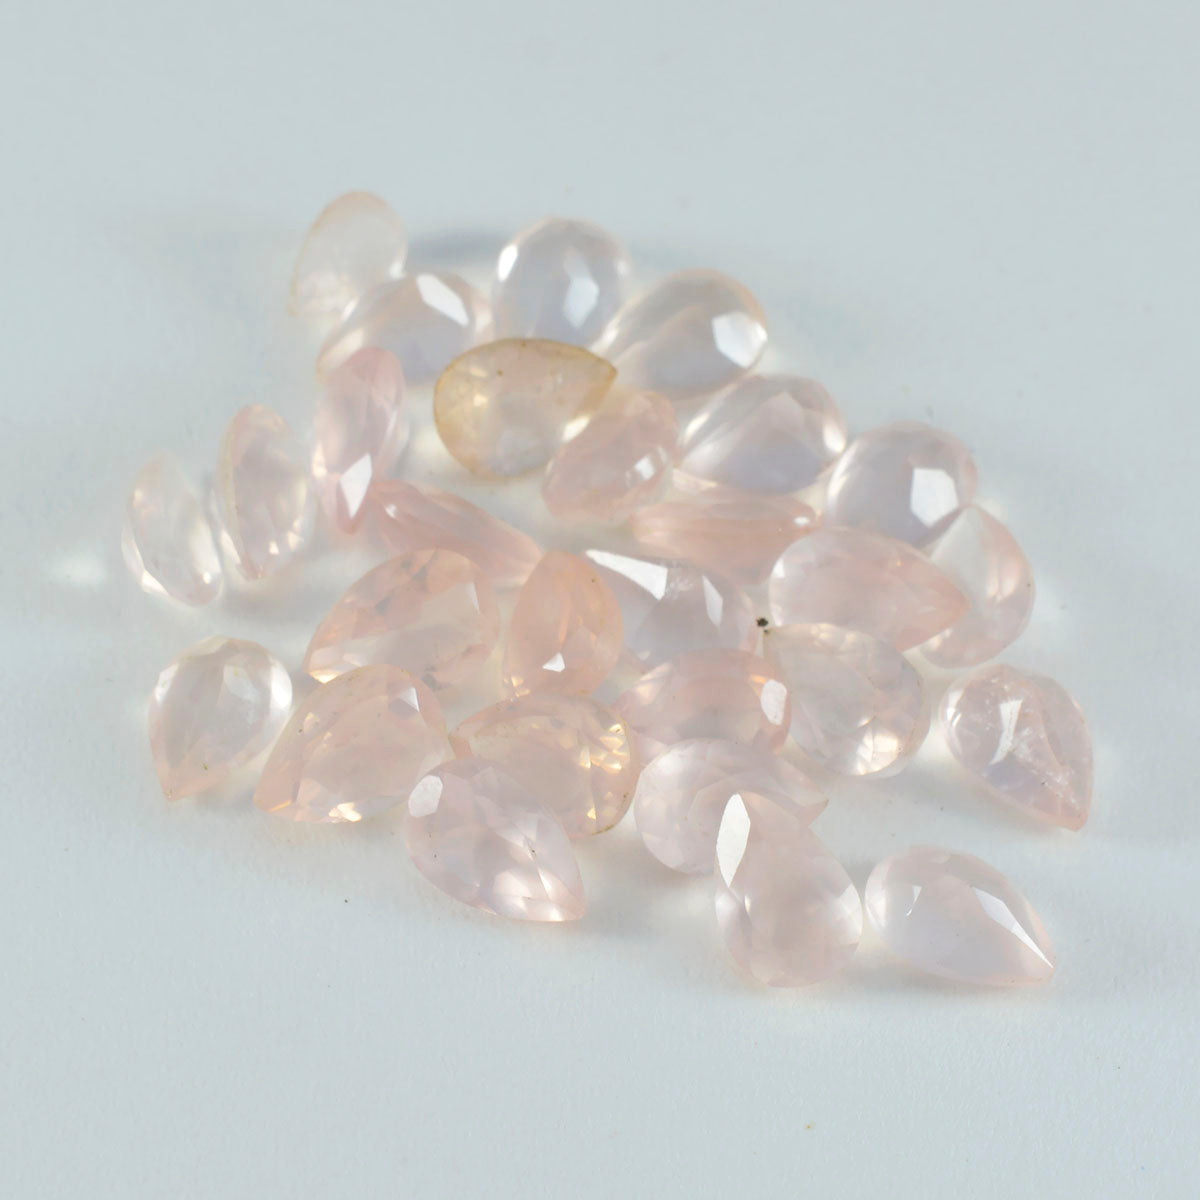 riyogems 1 шт., розовый кварц, граненые 4x6 мм, грушевидная форма, милые качественные драгоценные камни